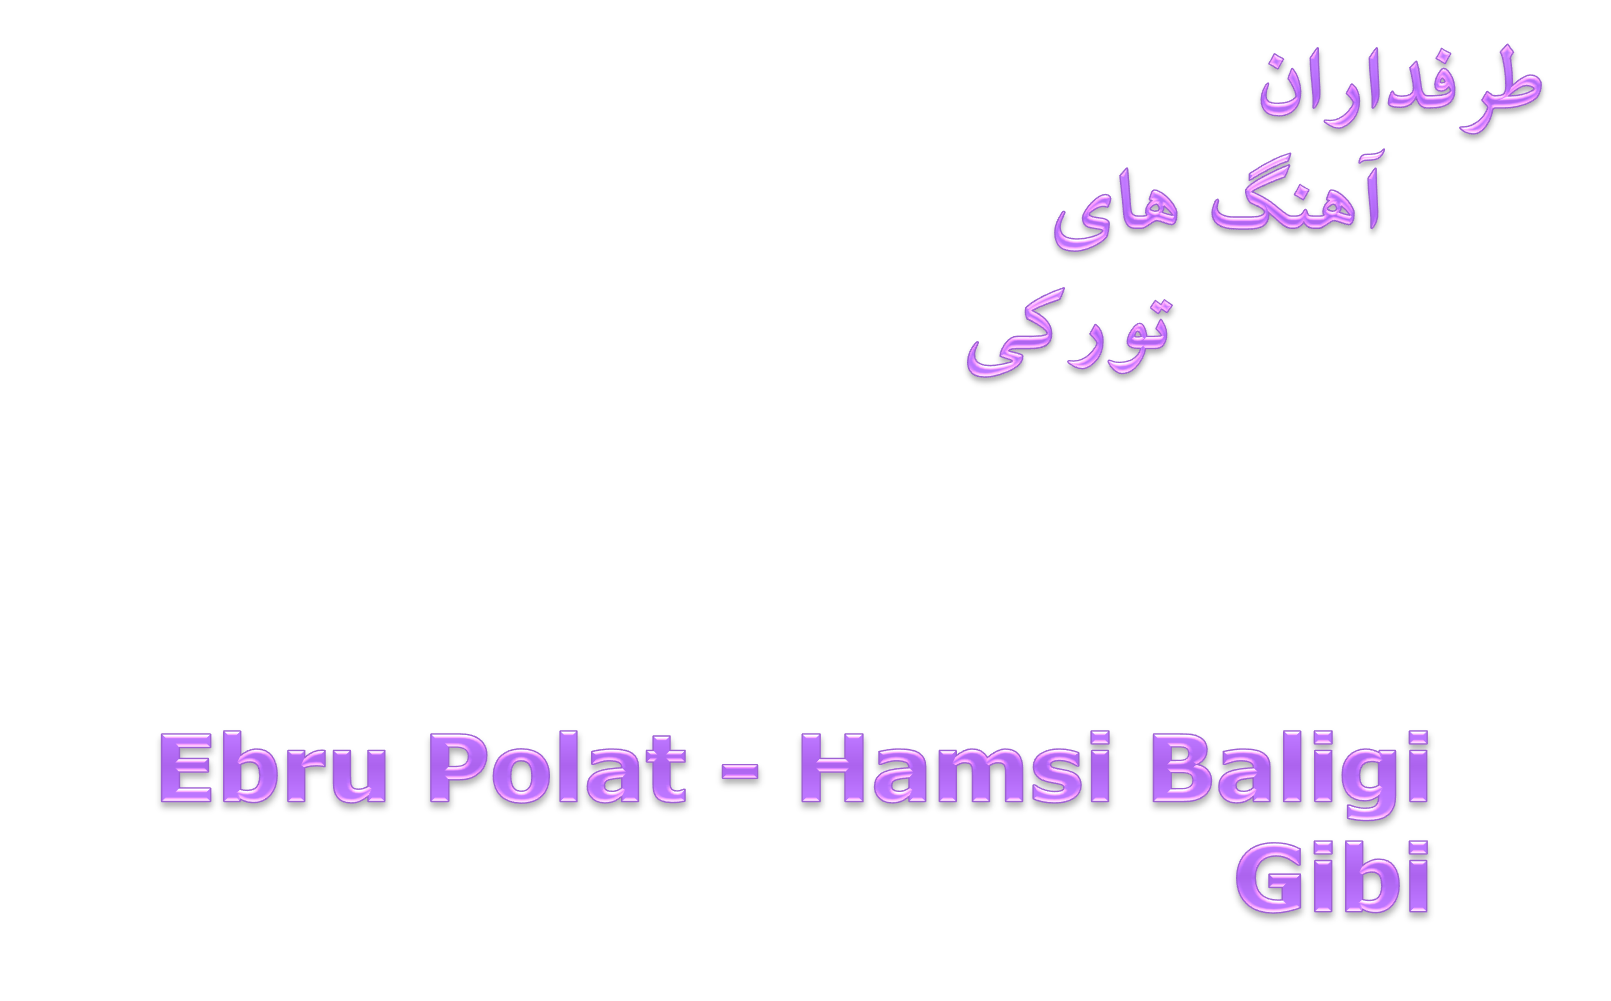 دانلود آهنگ جدید Ebru Polat به نام Hamsi Baligi Gibi